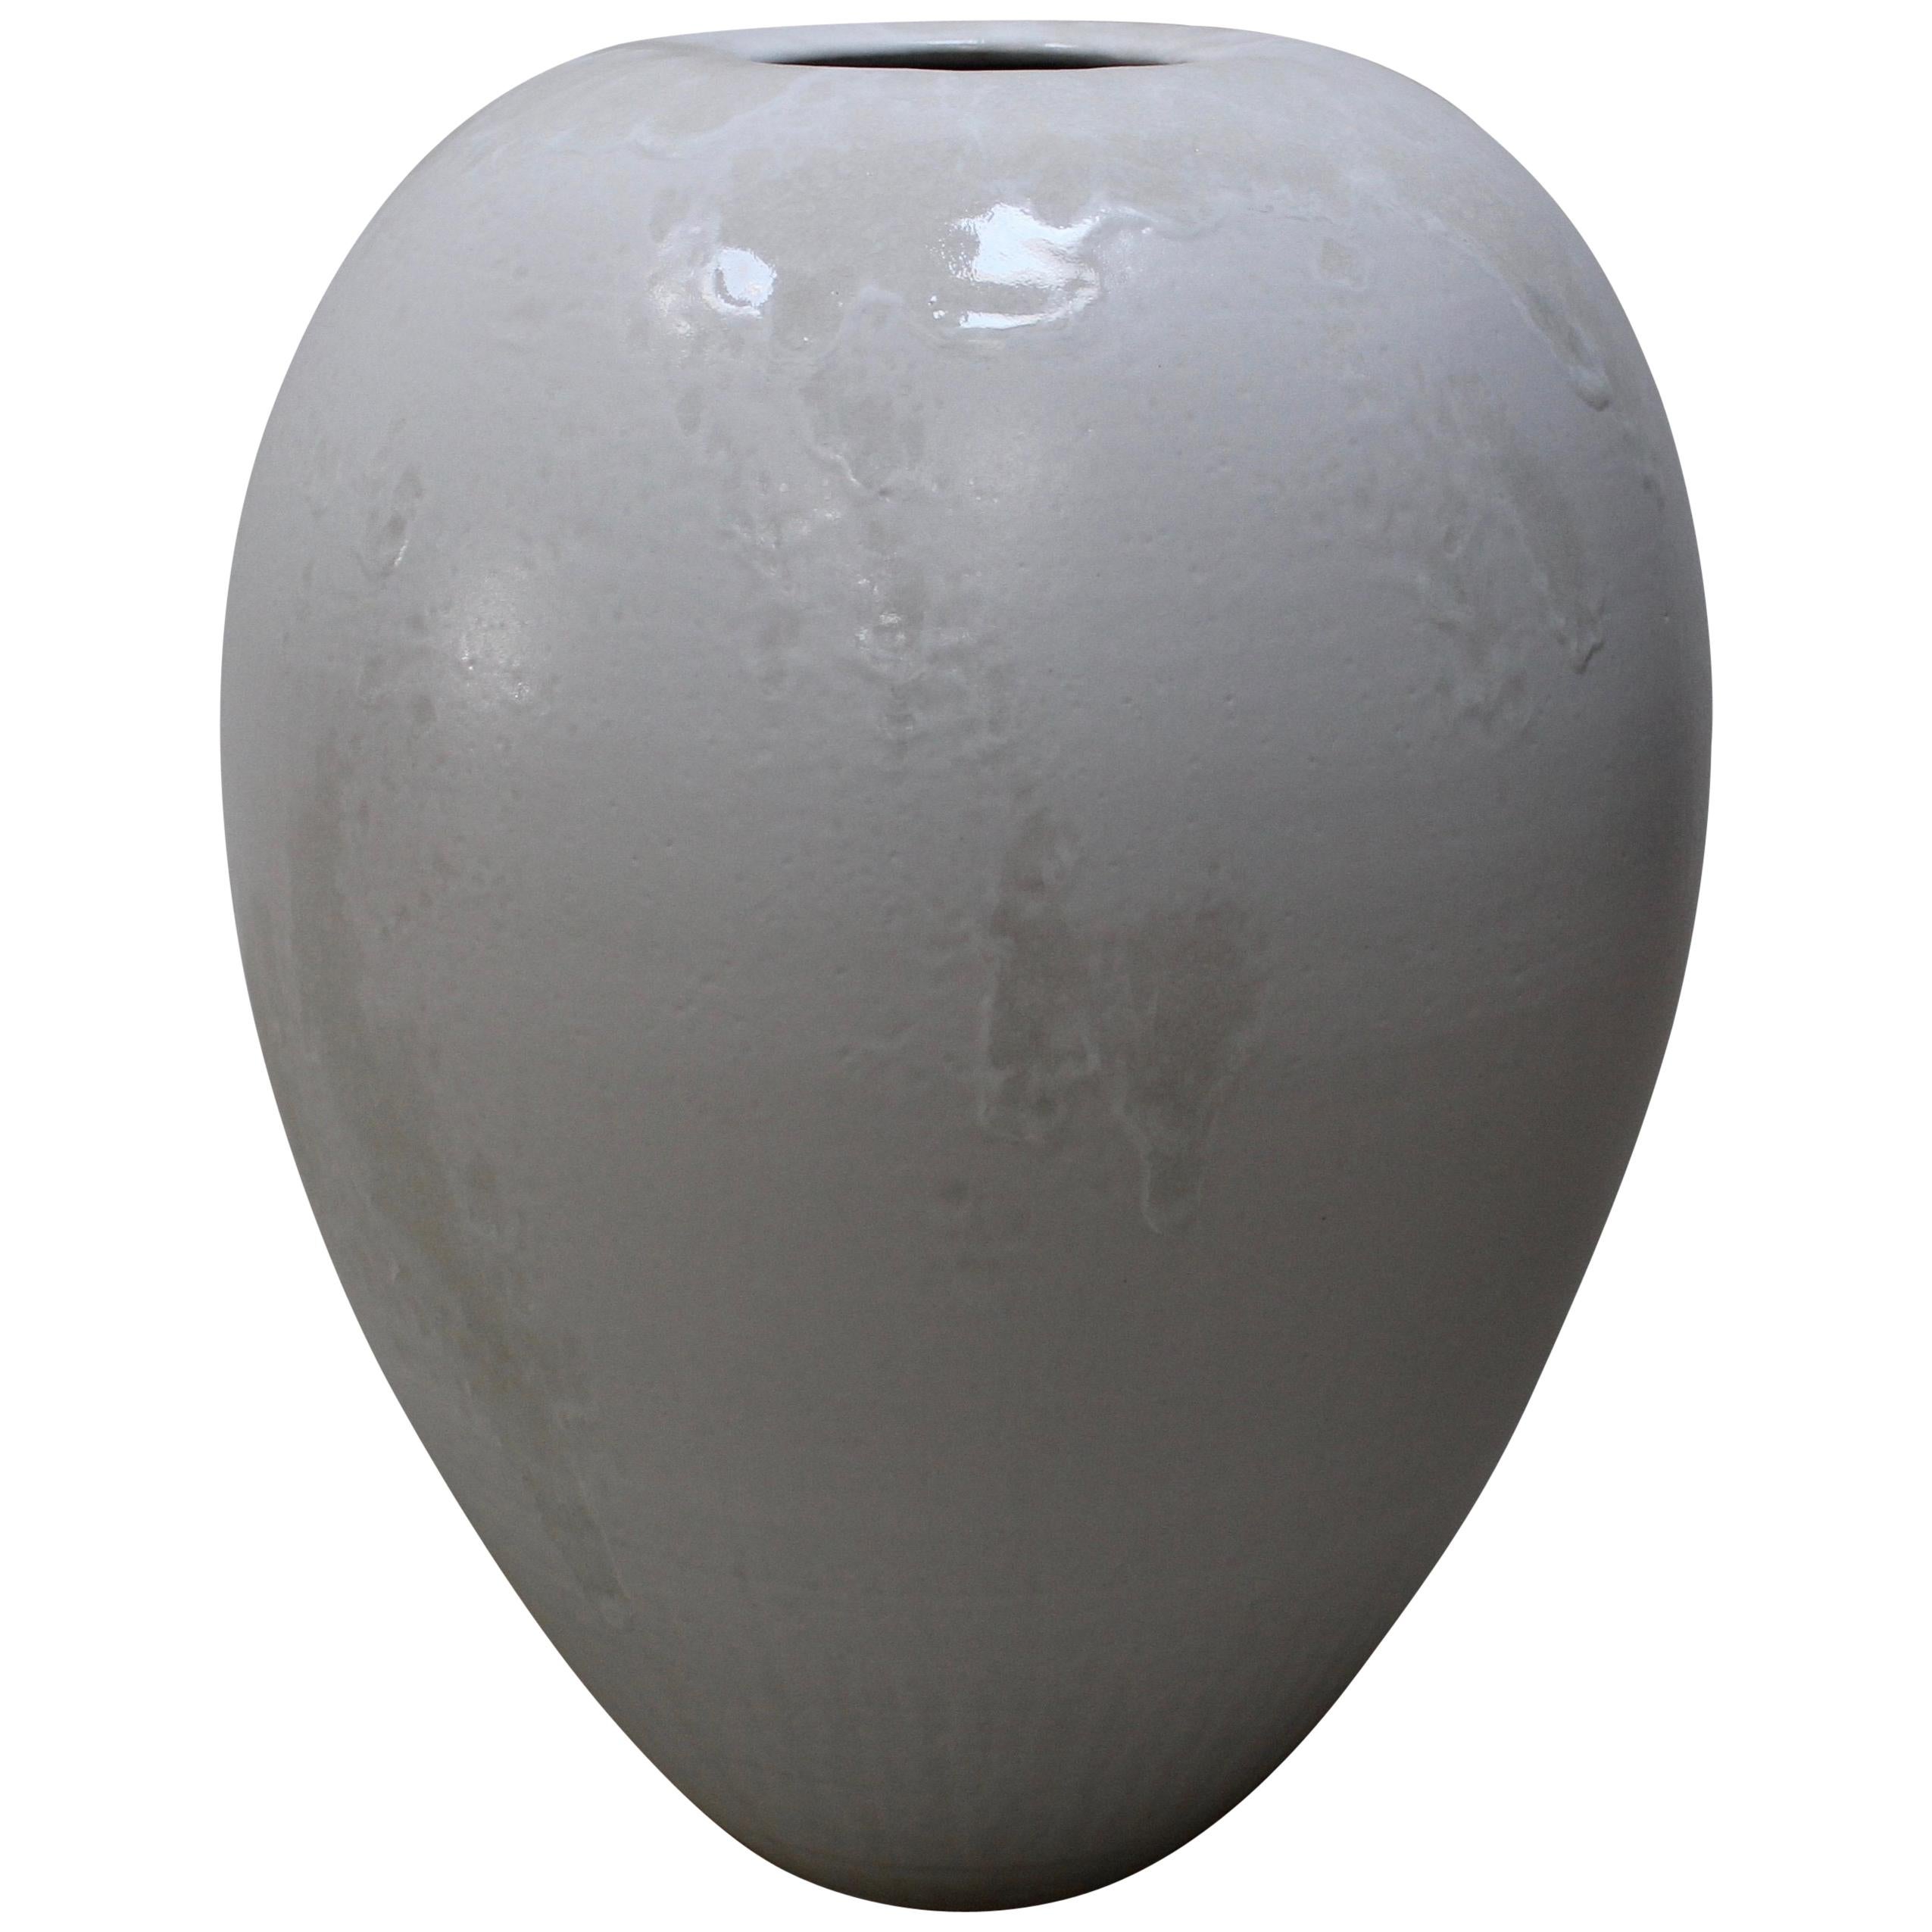 Kh Würtz Very Large Broad Shouldered Baluster Vase In Ivory Glaze At